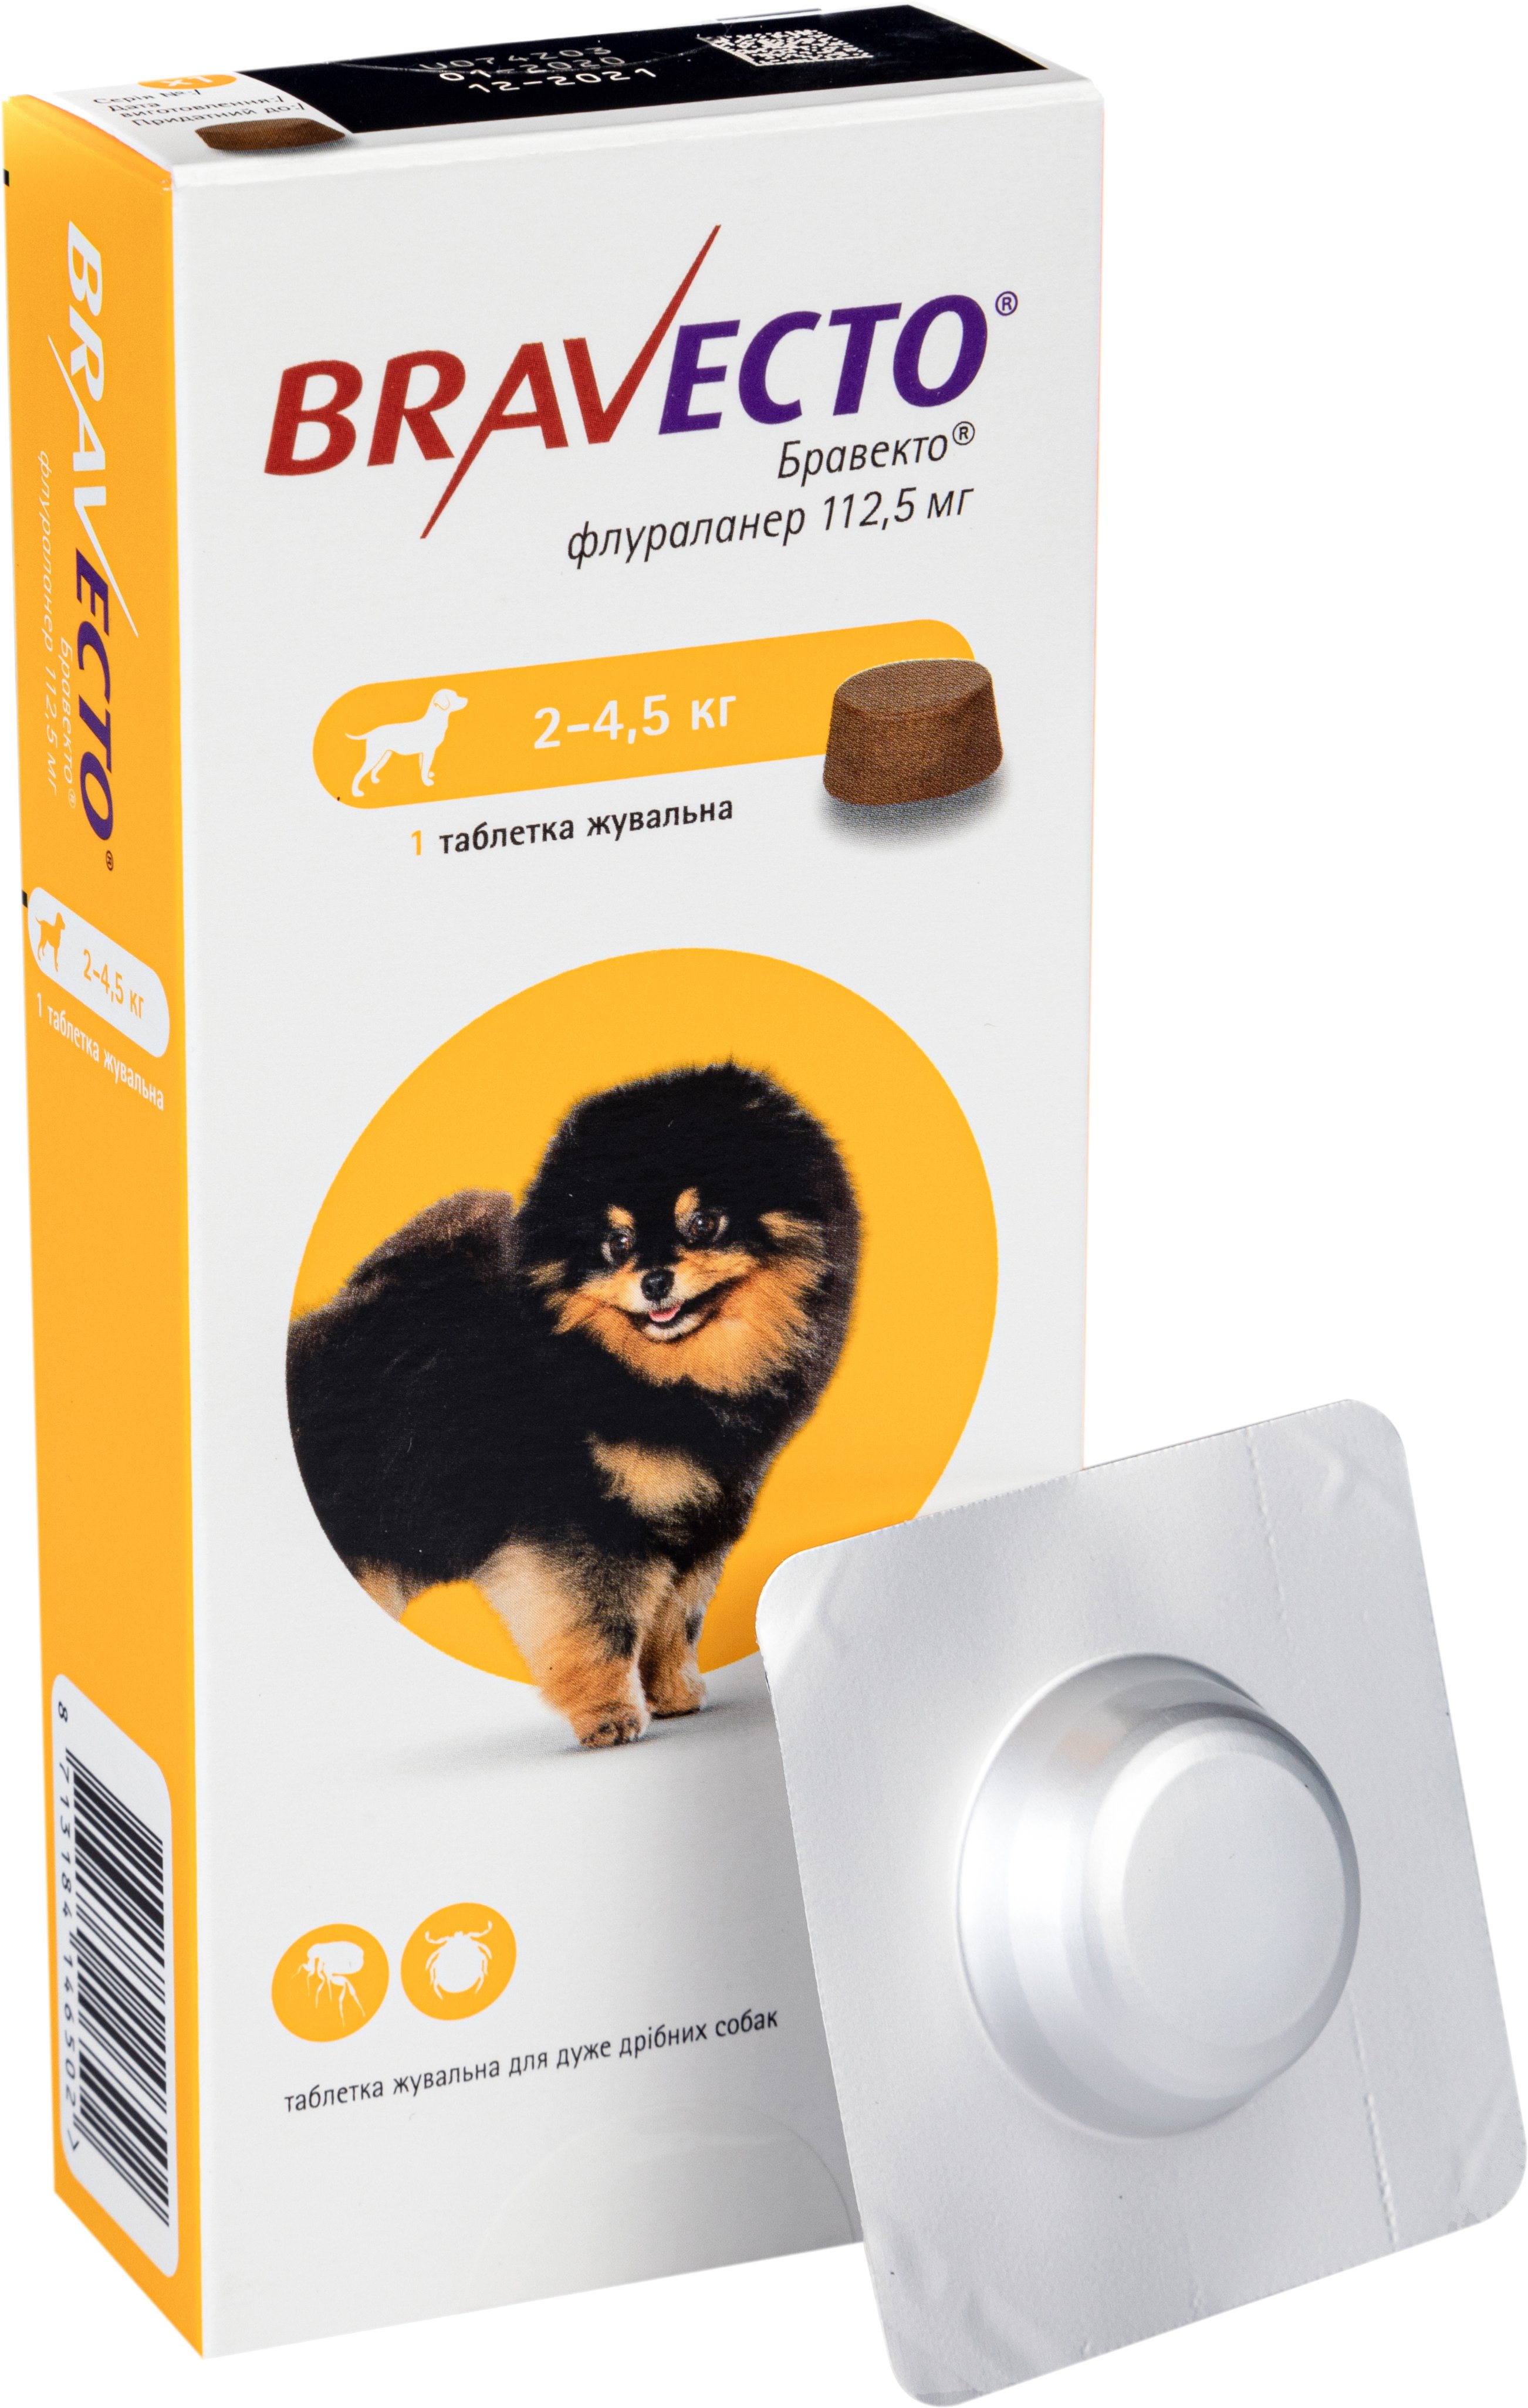 Жувальна пігулка Bravecto від бліх і кліщів для собак з вагою від 2 до 4.5 кг, 1 шт. - фото 1